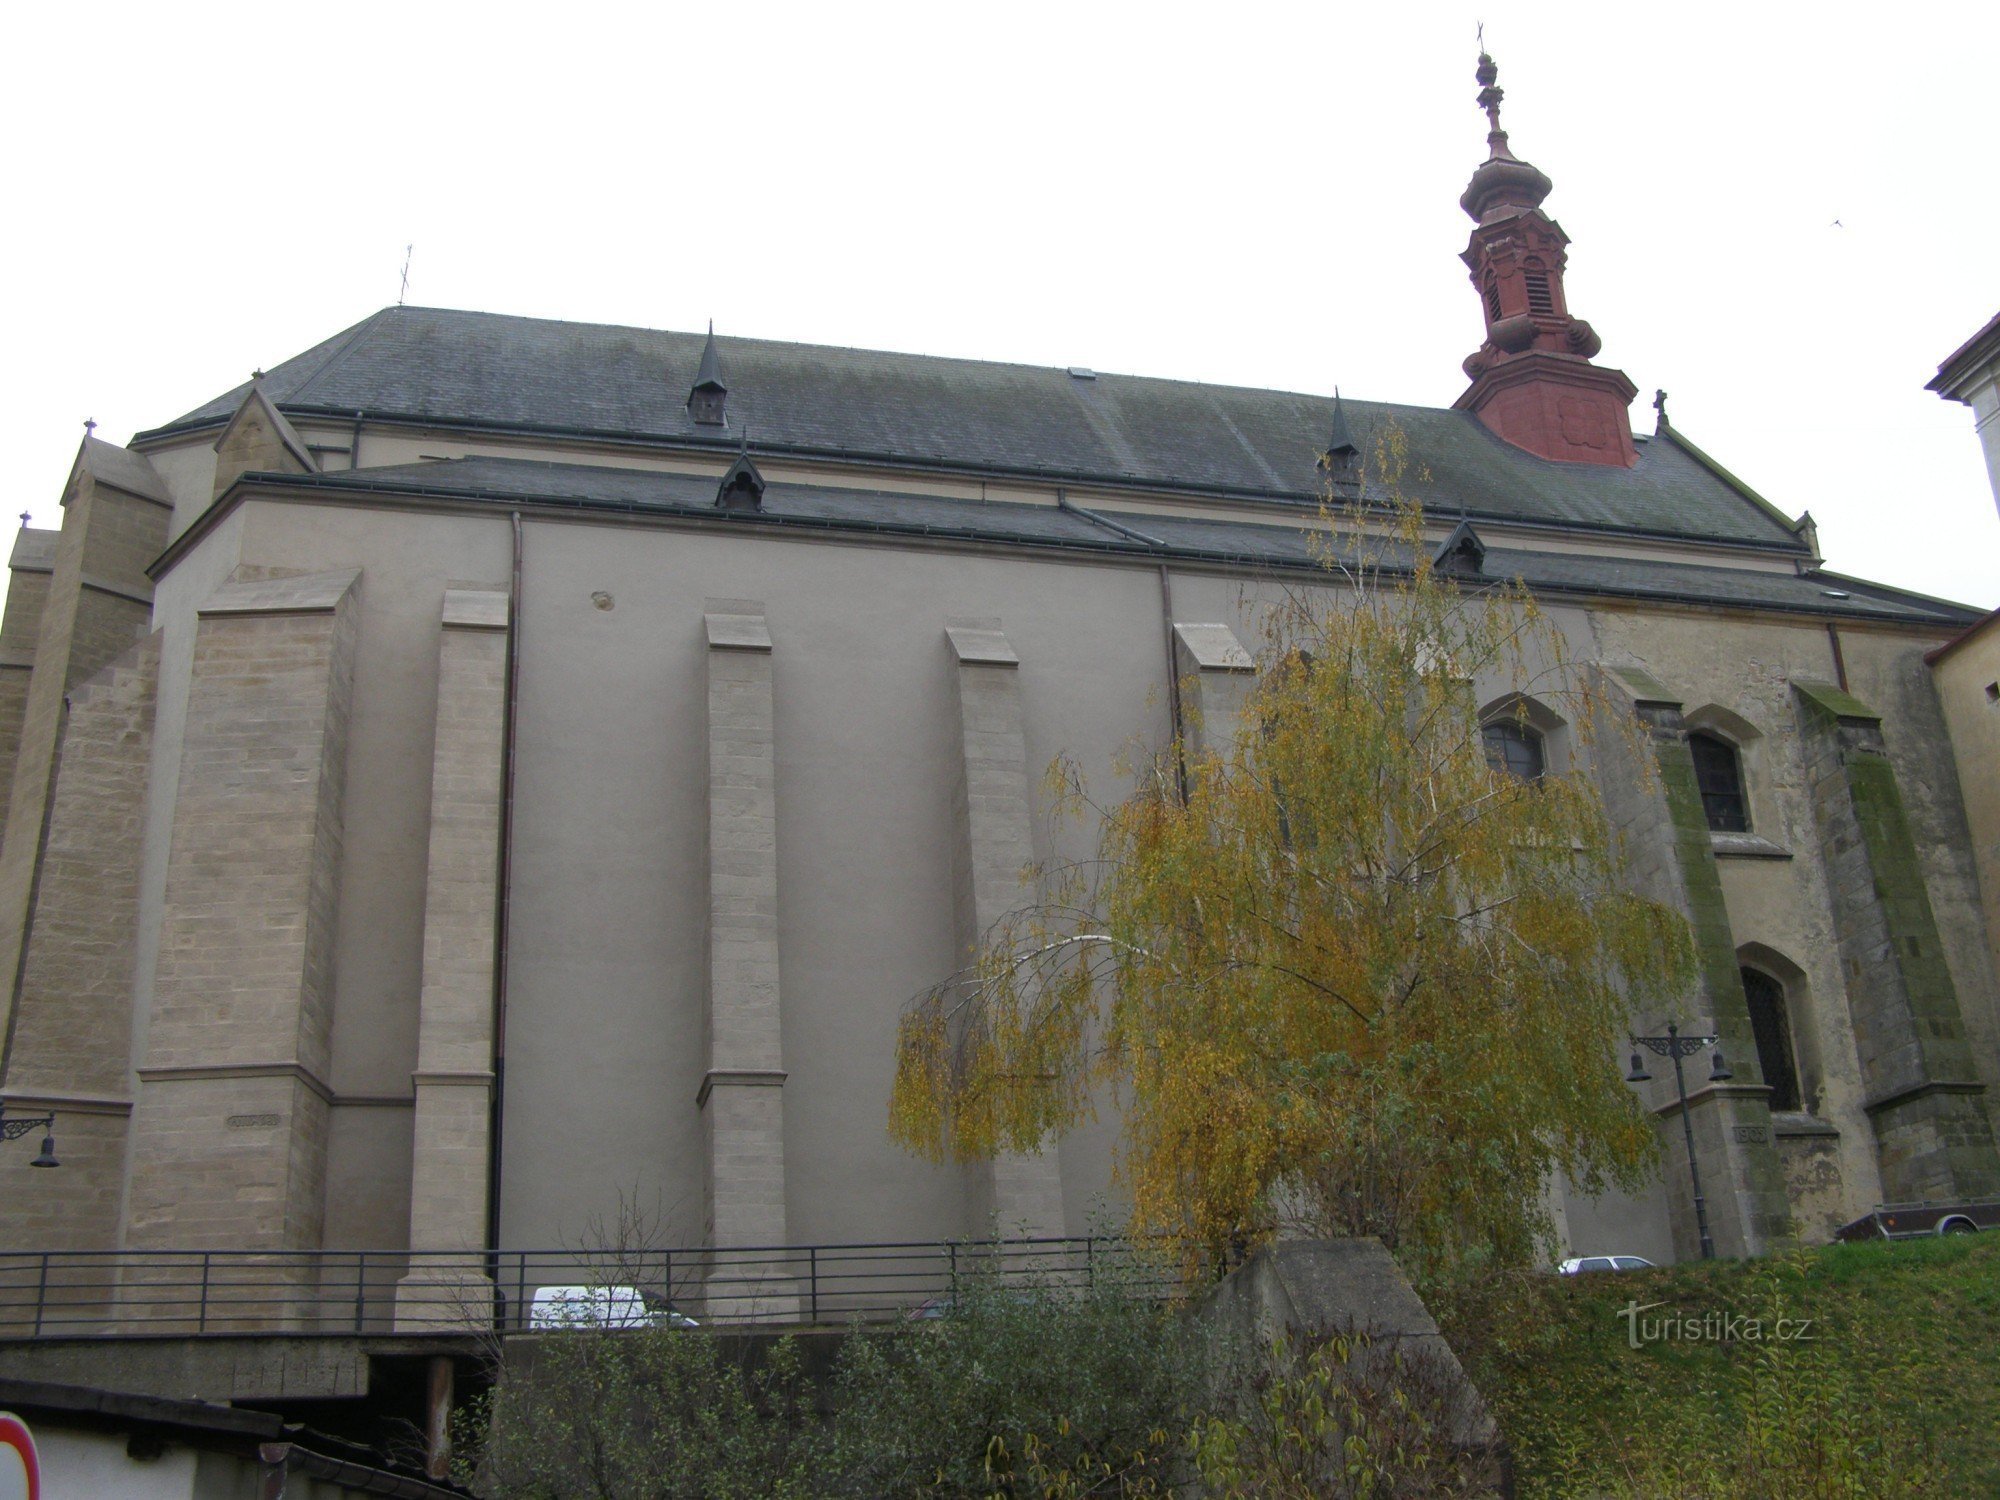 Jaroměř - kyrkan St. Nicholas